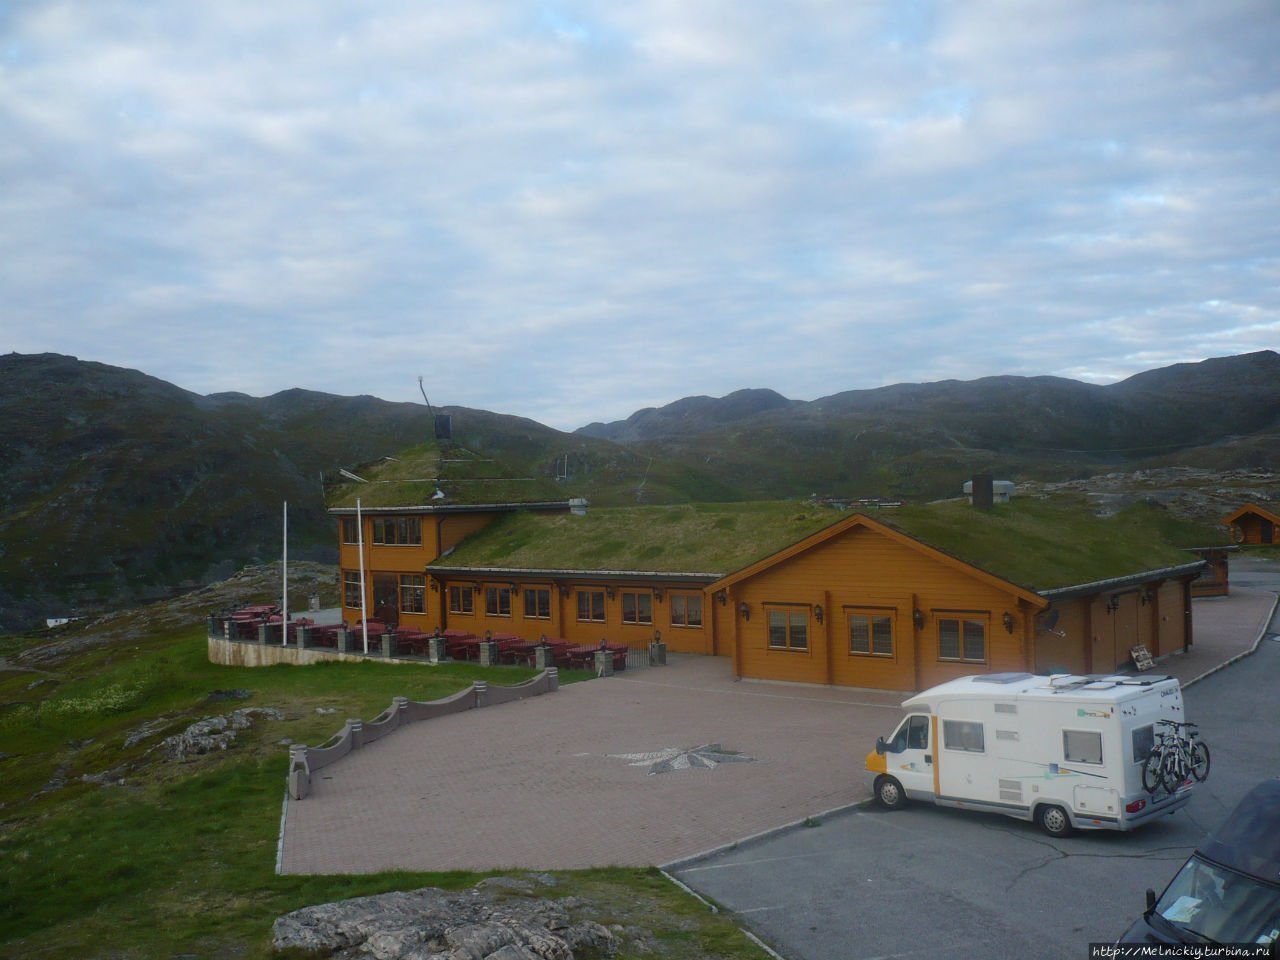 Ресторан «Турист» Хаммерфест, Норвегия